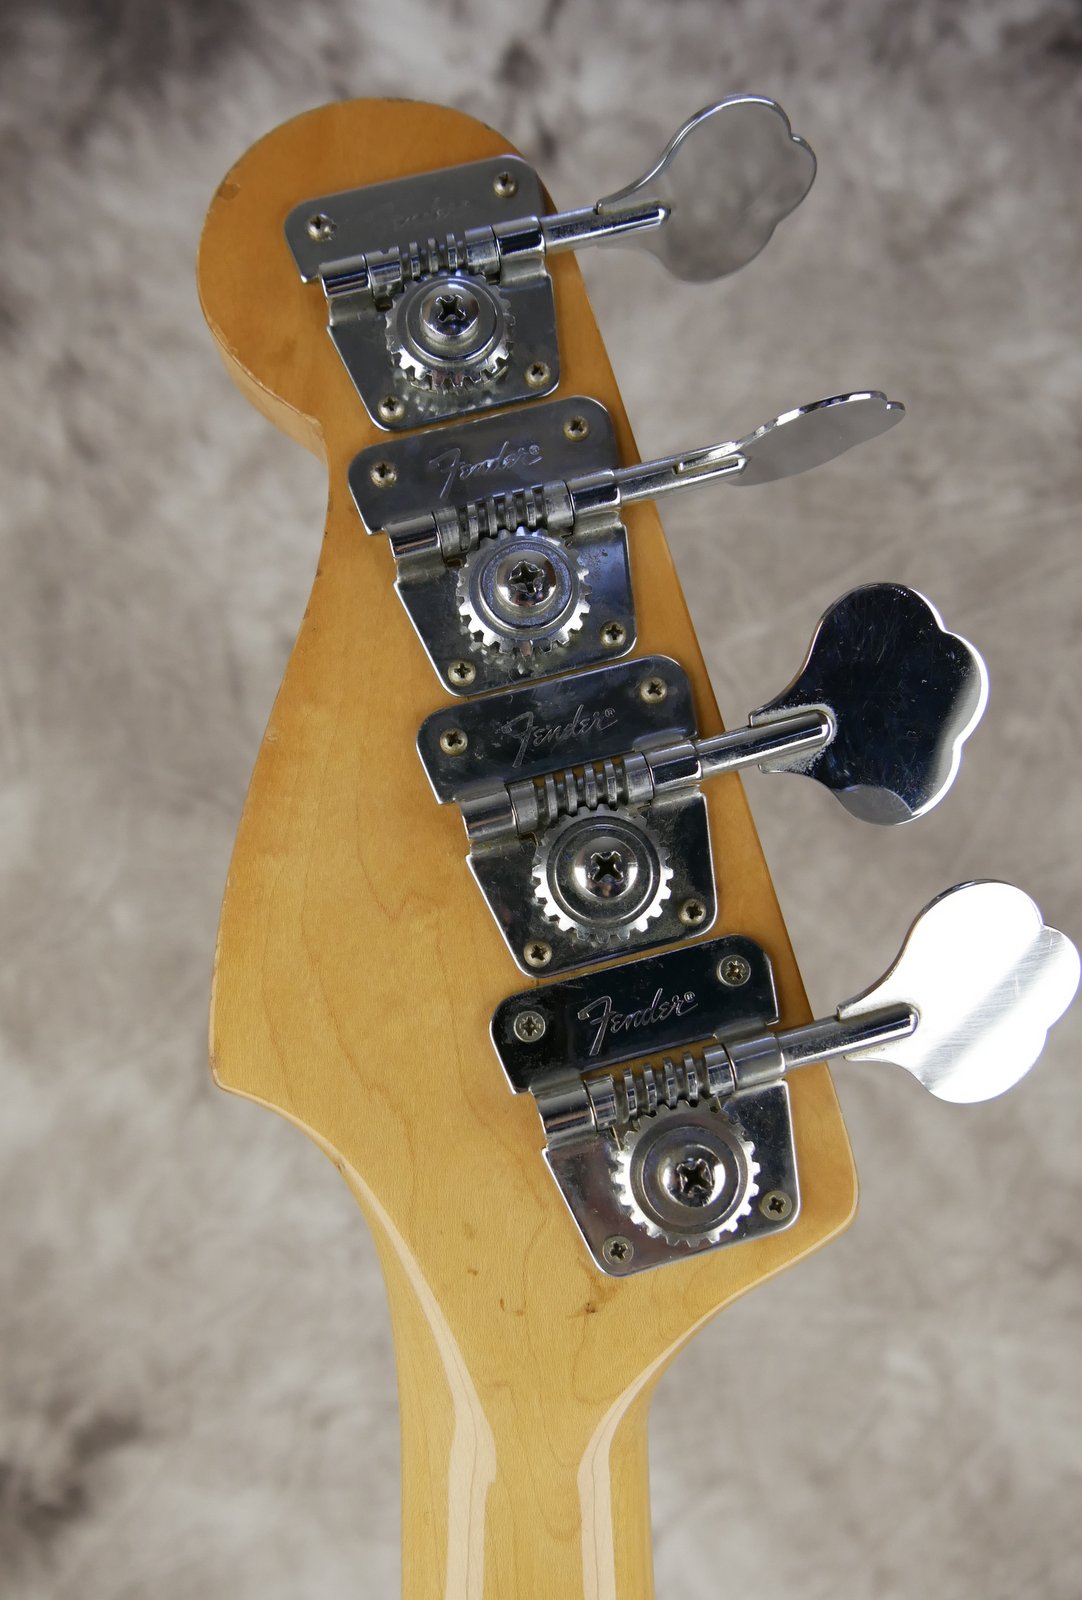 Fender-Precision-Bass-1979-sunburst-006.JPG